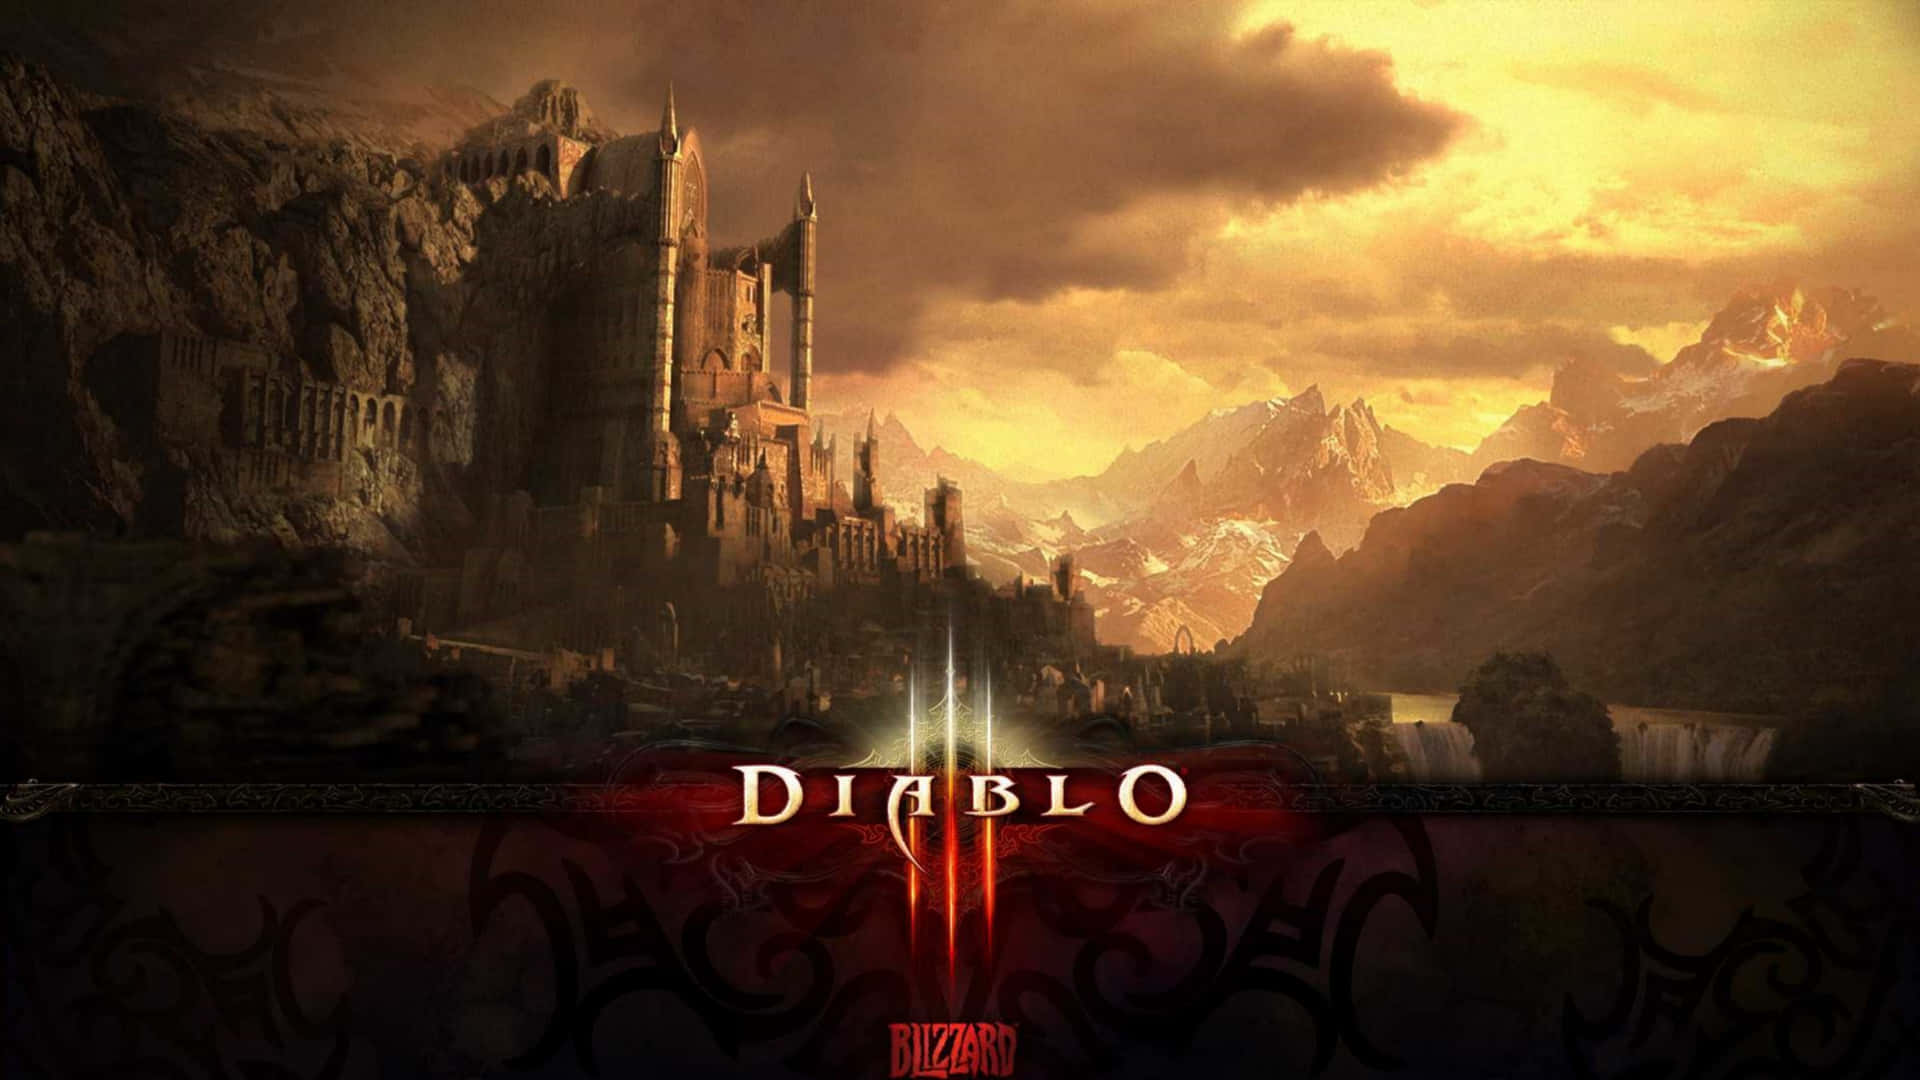 Upplevalla Spänningar Av Äventyr Med Diablo 4k Som Bakgrundsbild På Datorn Eller Mobilen. Wallpaper